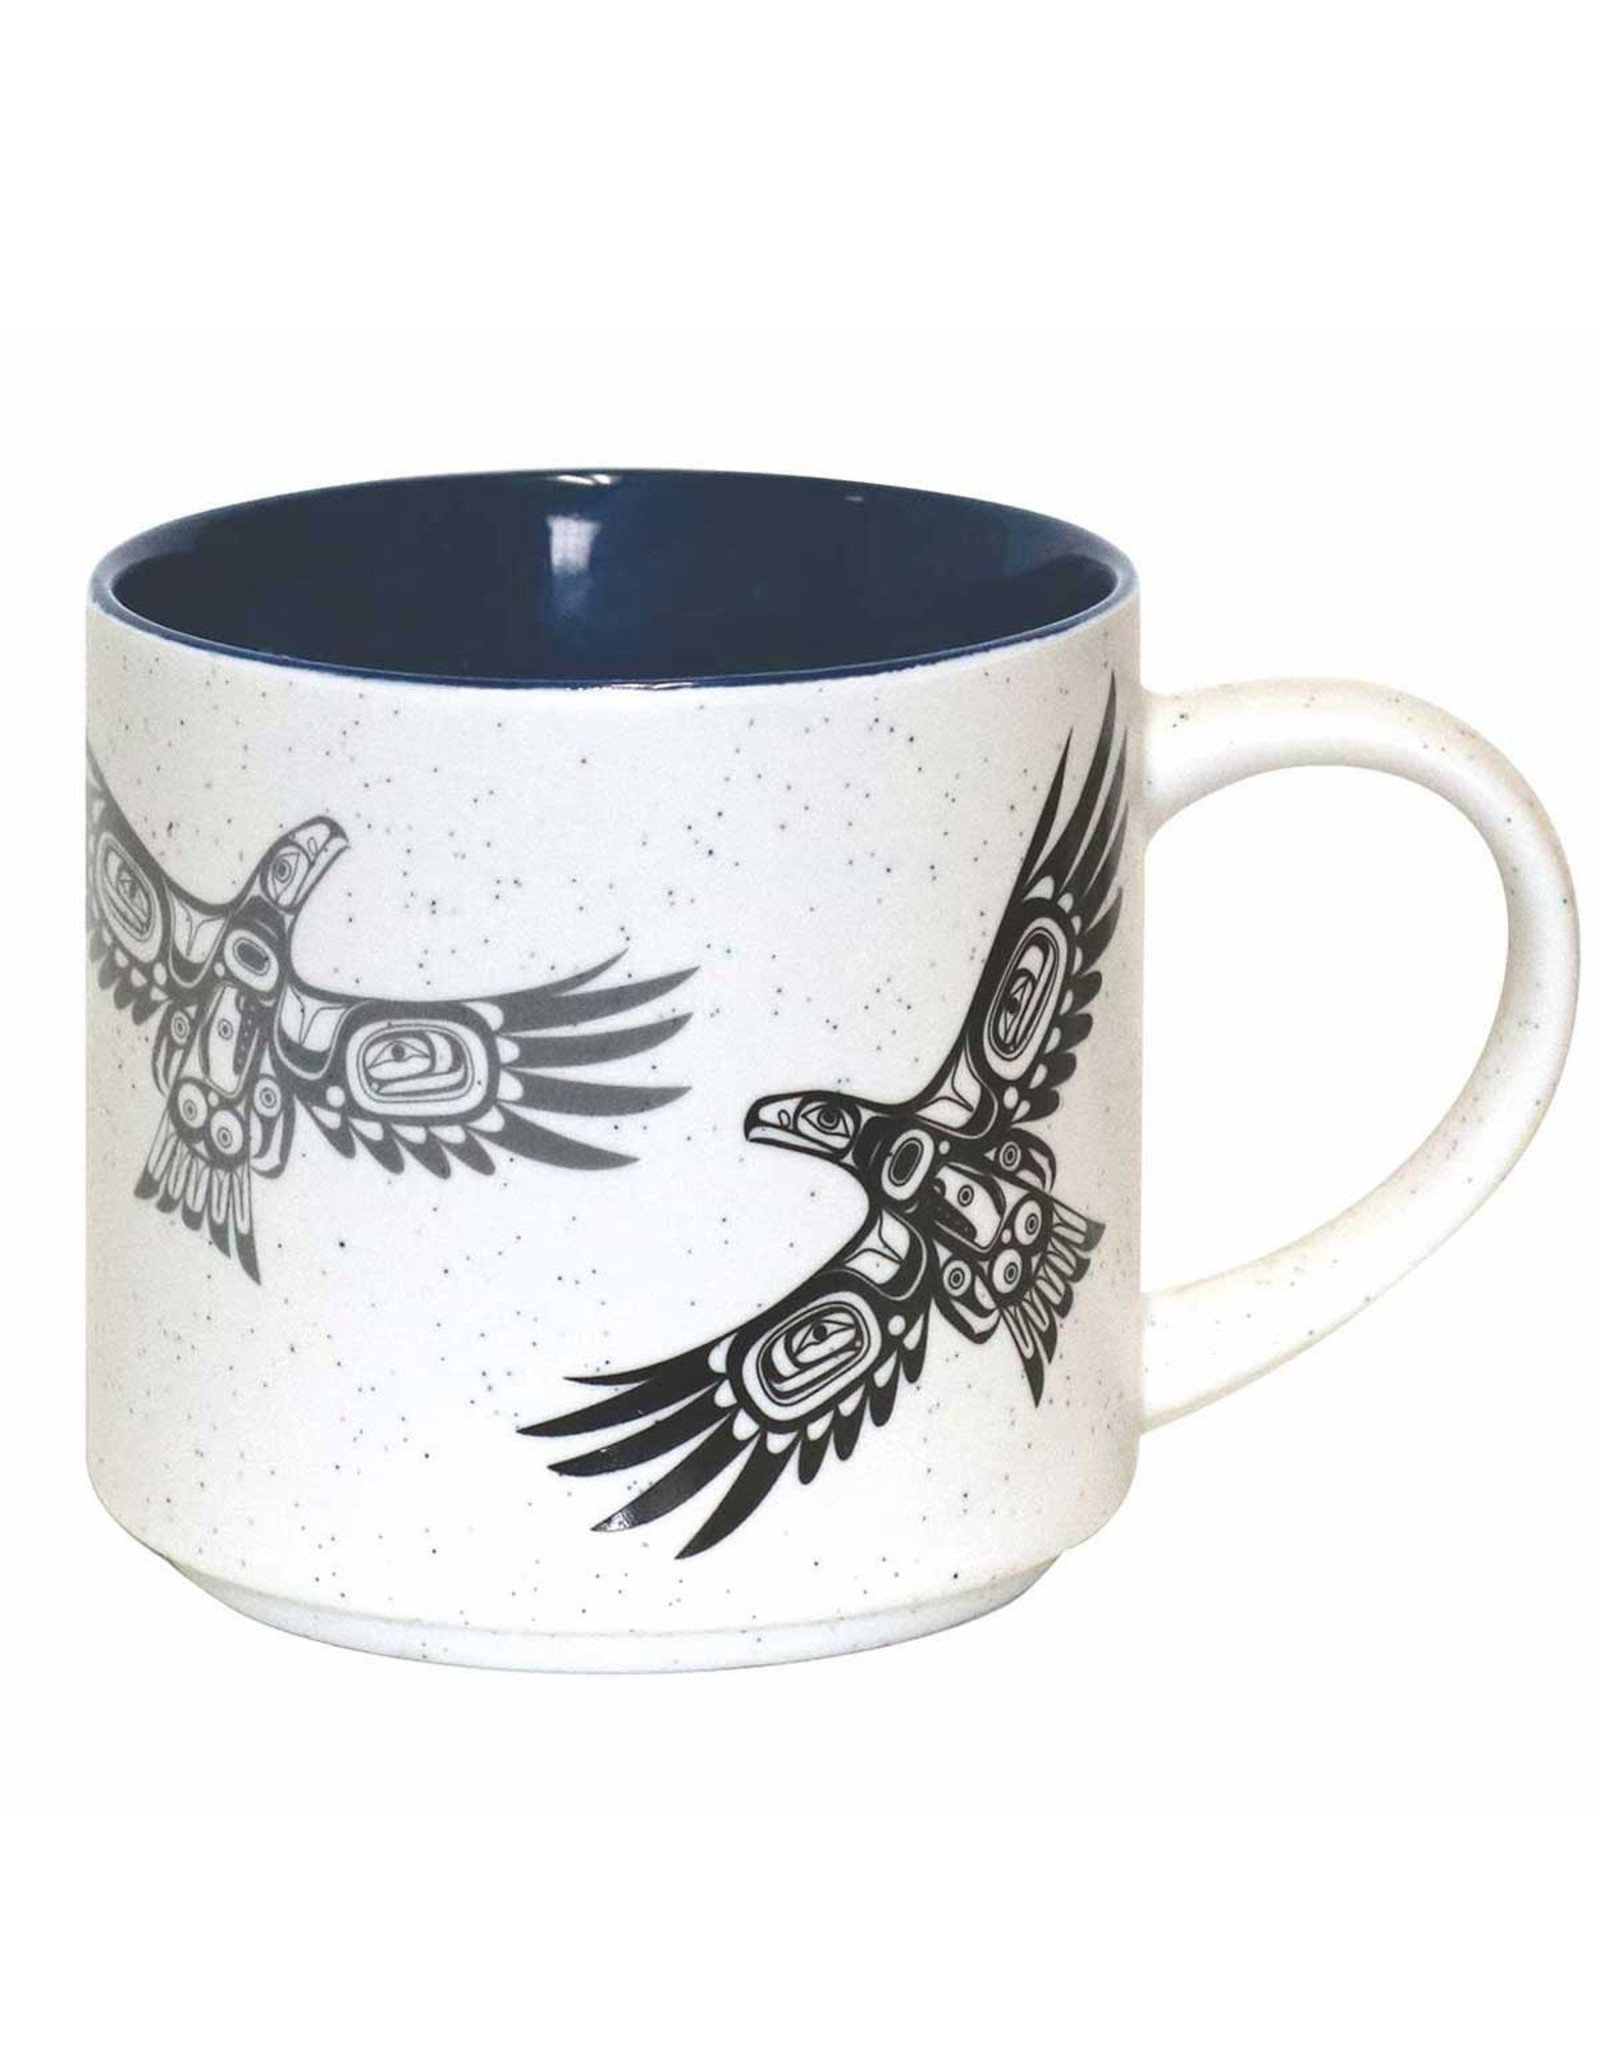 Tasse en Céramique - Soaring Eagle (CMUG17)